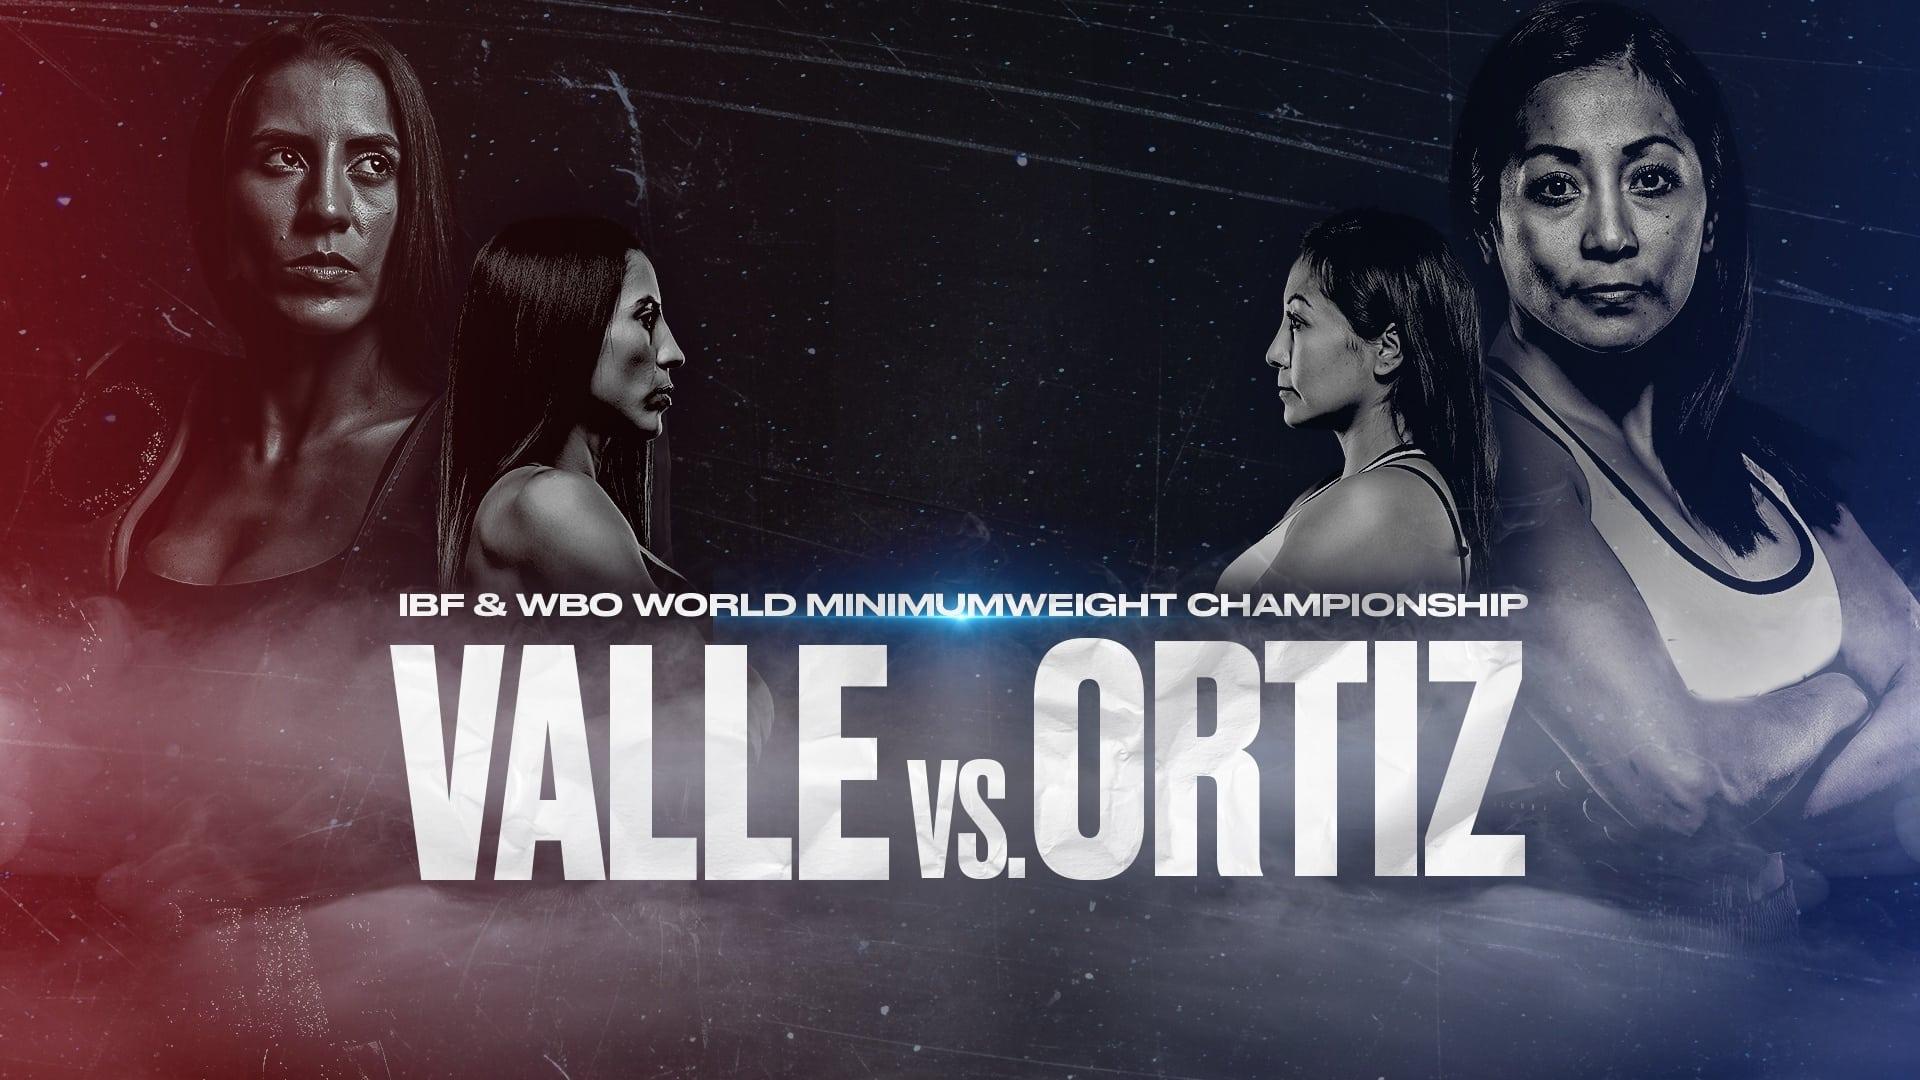 Yokasta Valle vs. Anabel Ortiz backdrop